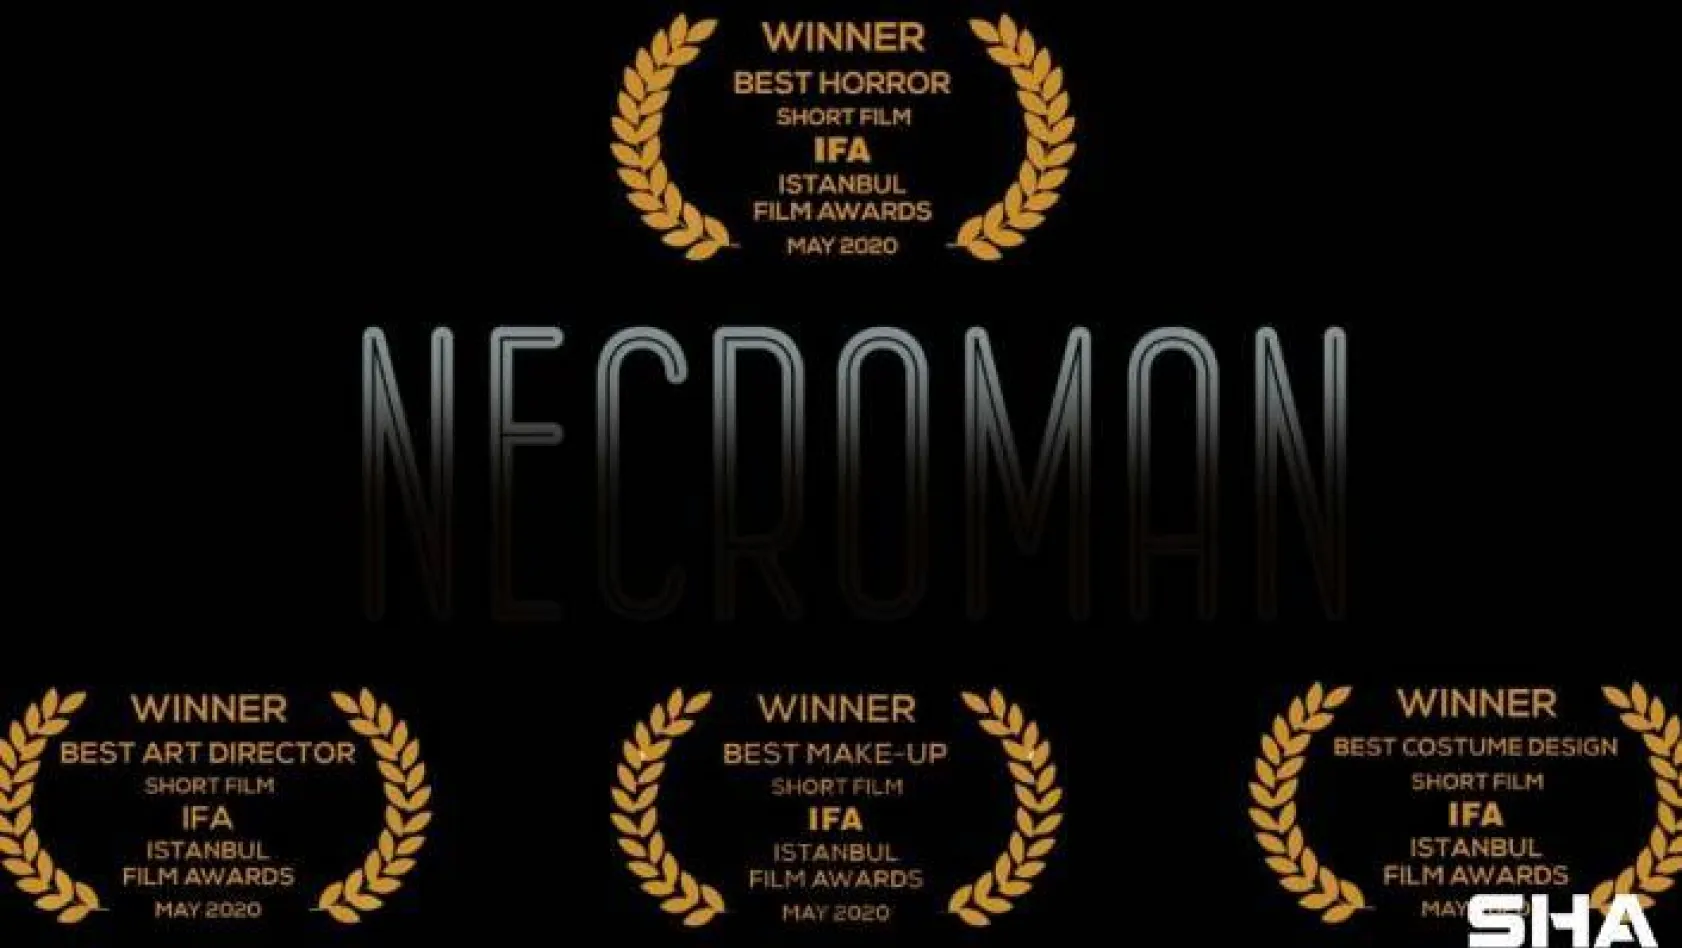 'Necroman' kısa filmiyle 14 ödülün sahibi oldu